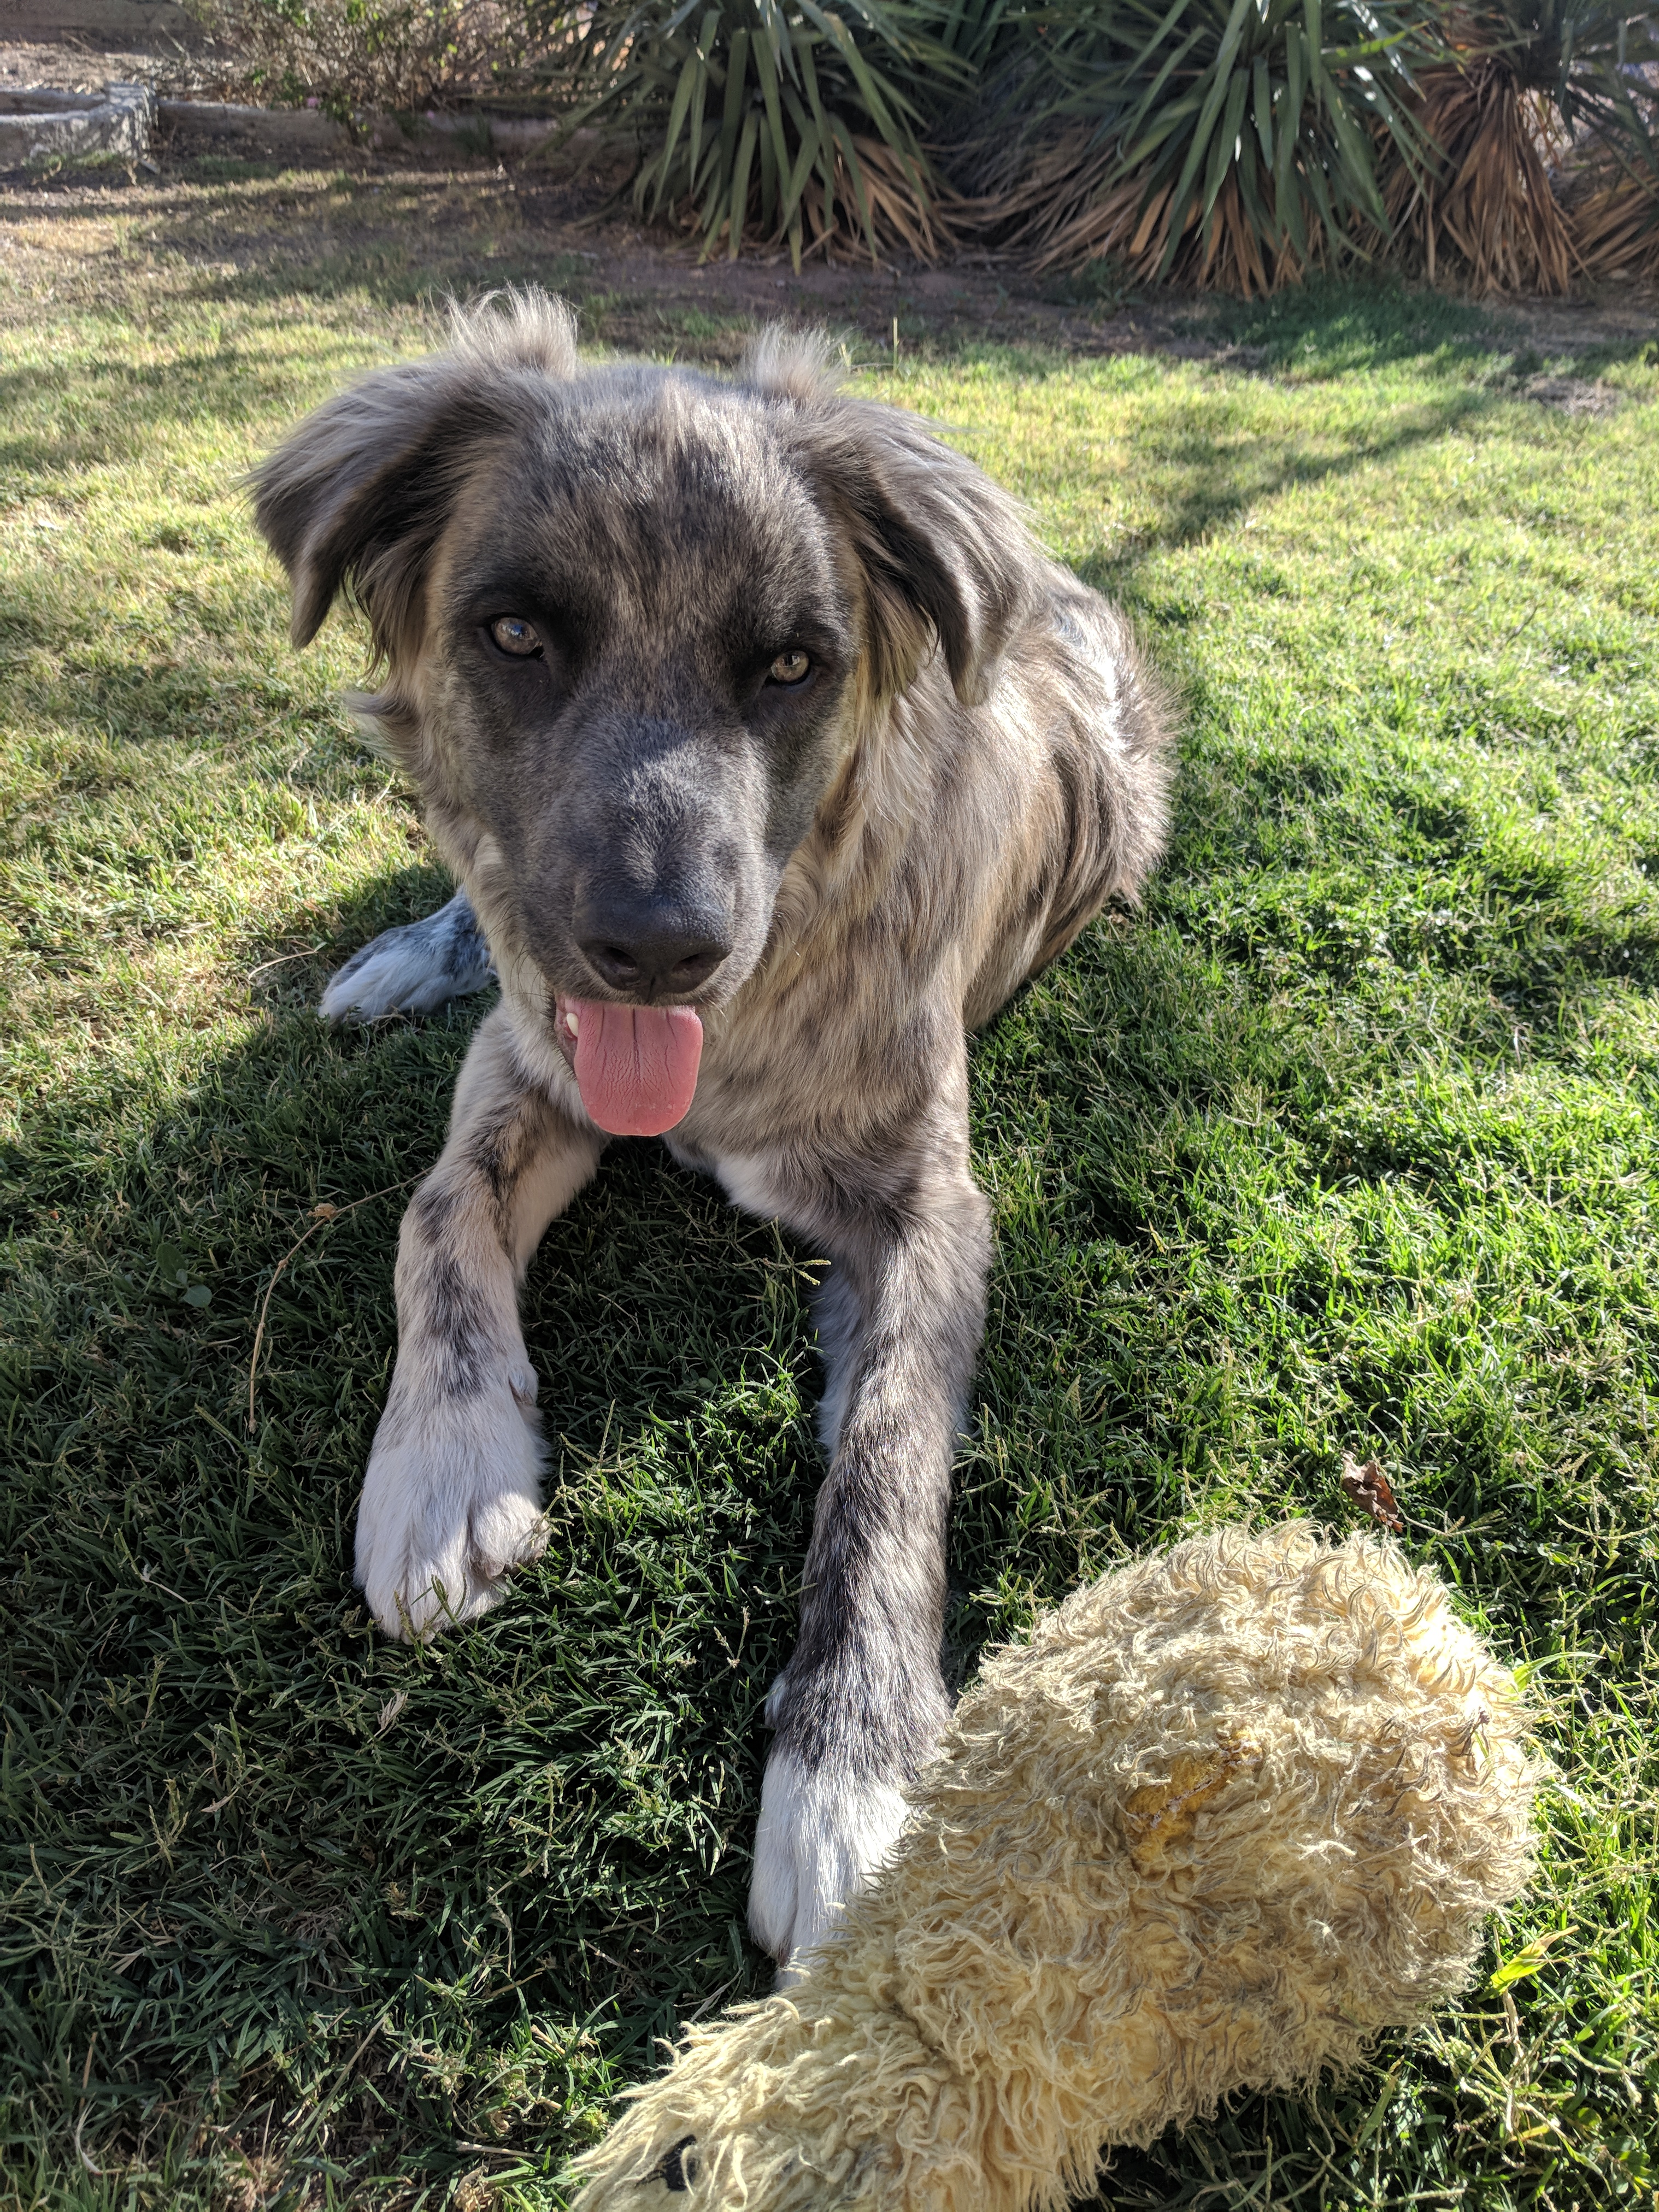 adoptable Dog in El Paso,TX named Rosco